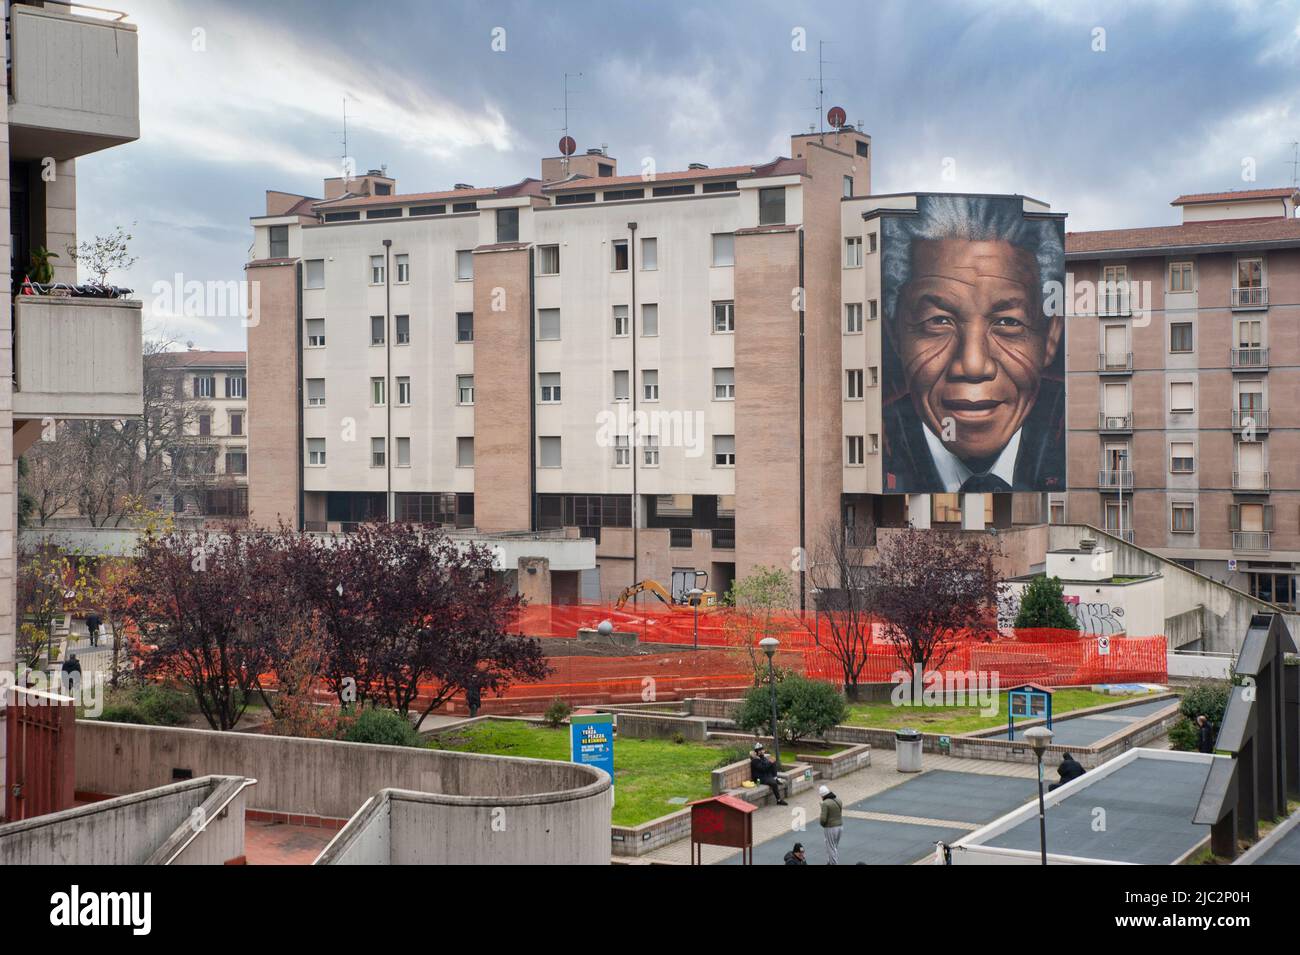 Ein riesiges Wandgemälde des Straßenkünstlers Jorit Agoch, das Nelson Mandela zeigt, im Rifredi-Viertel von Florenz. Stockfoto